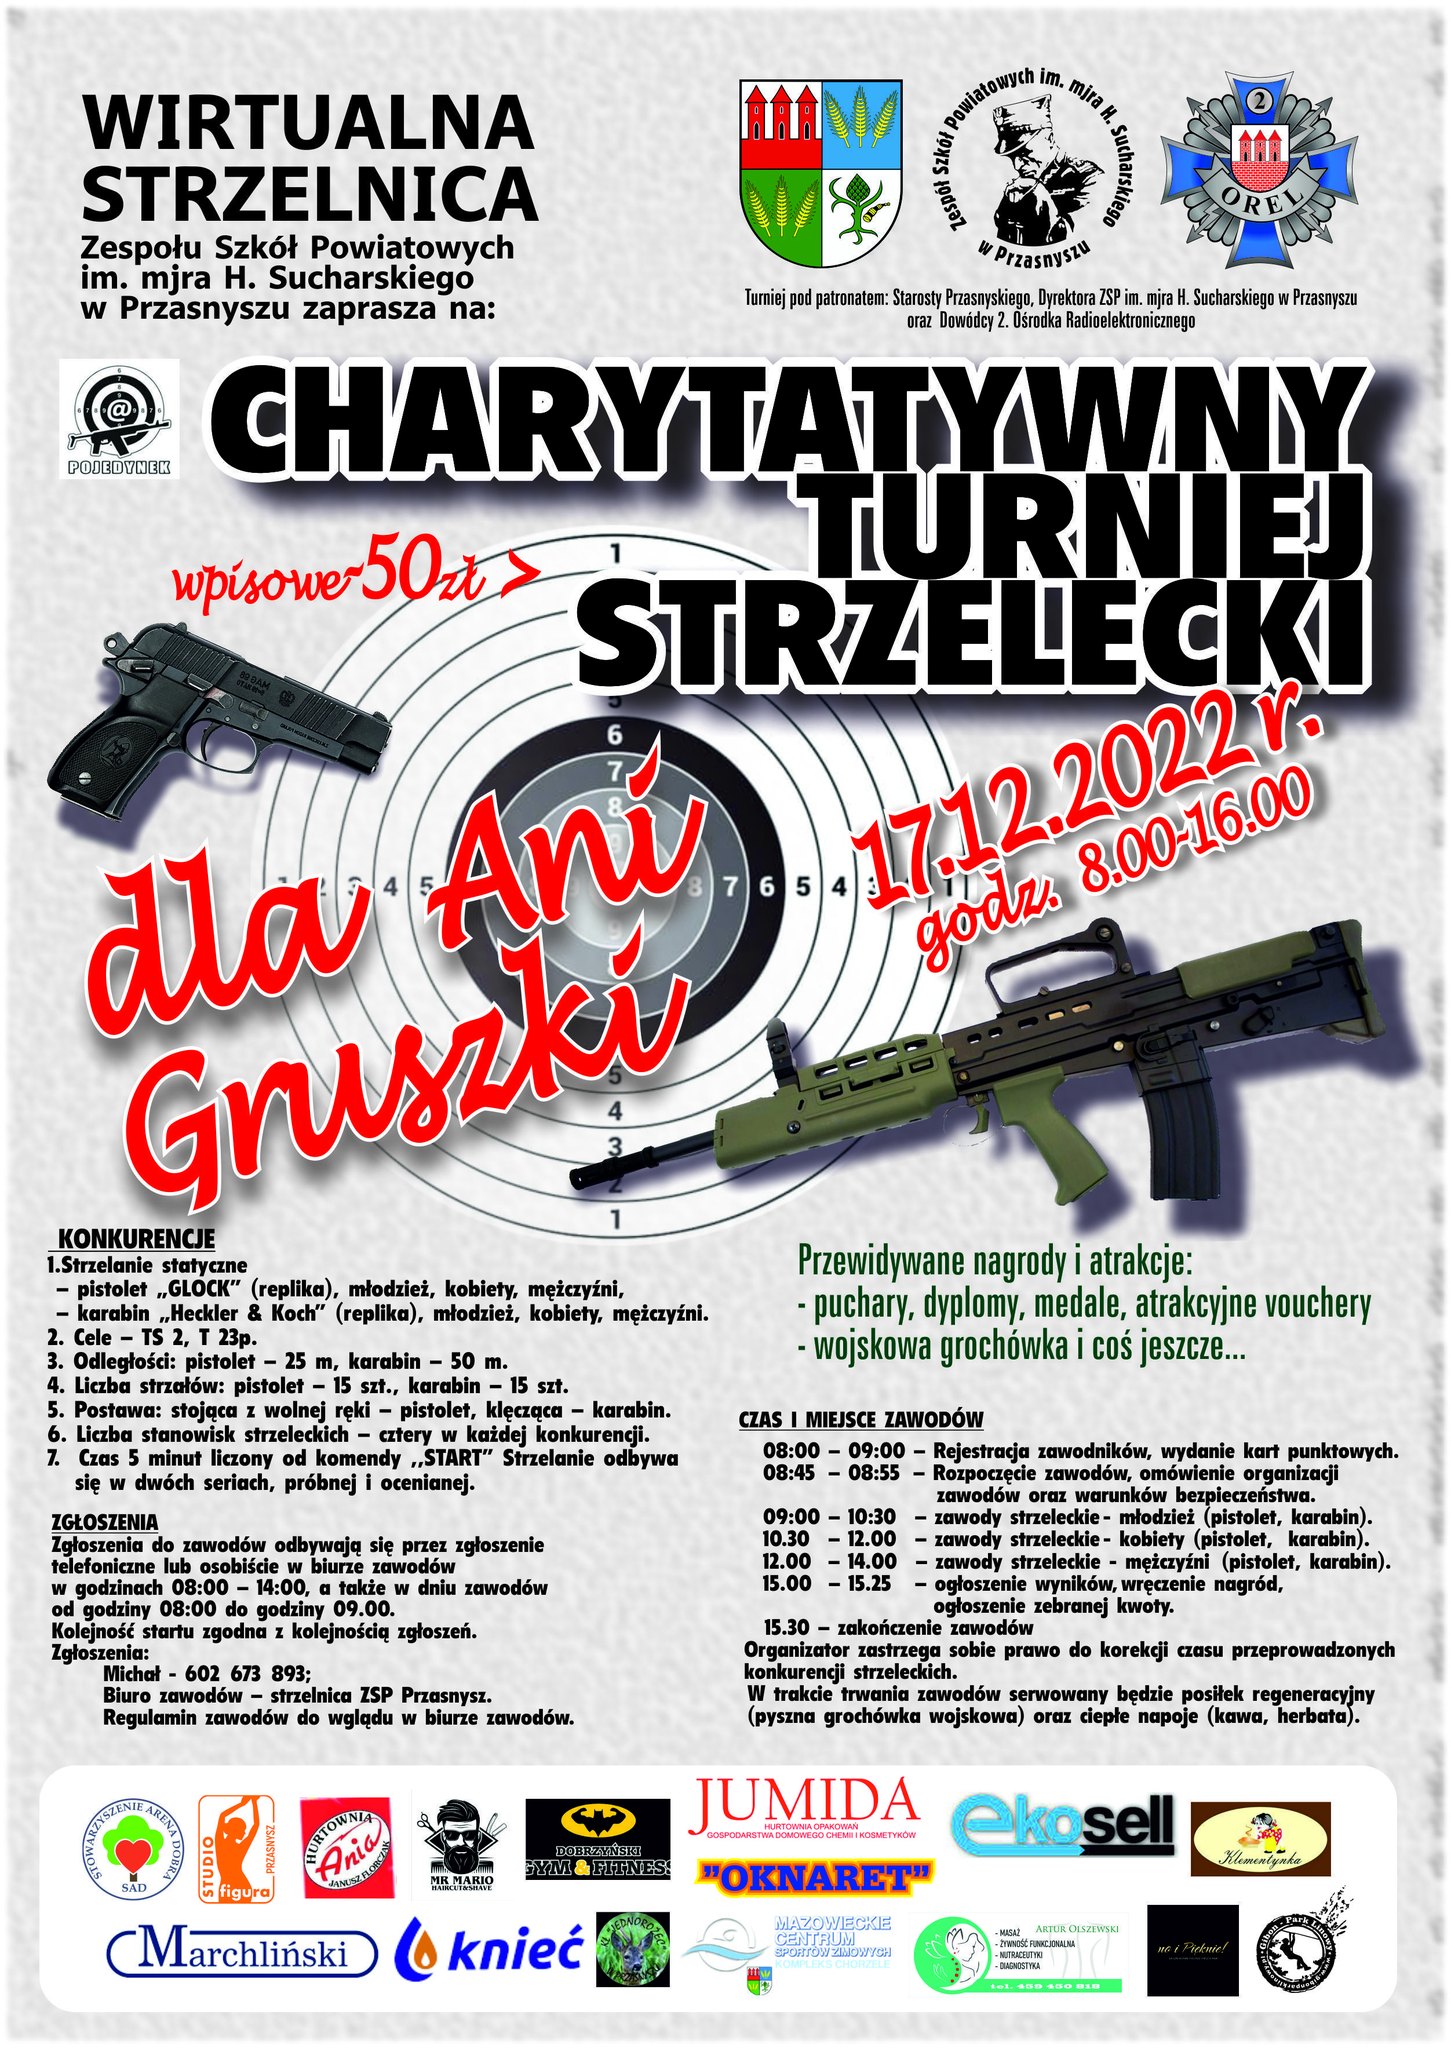 Grafika to plakat promujący charytatywny turniej strzelecki pod patronatem Starosty Krzysztofa Bieńkowskiego. Treść w artykule.